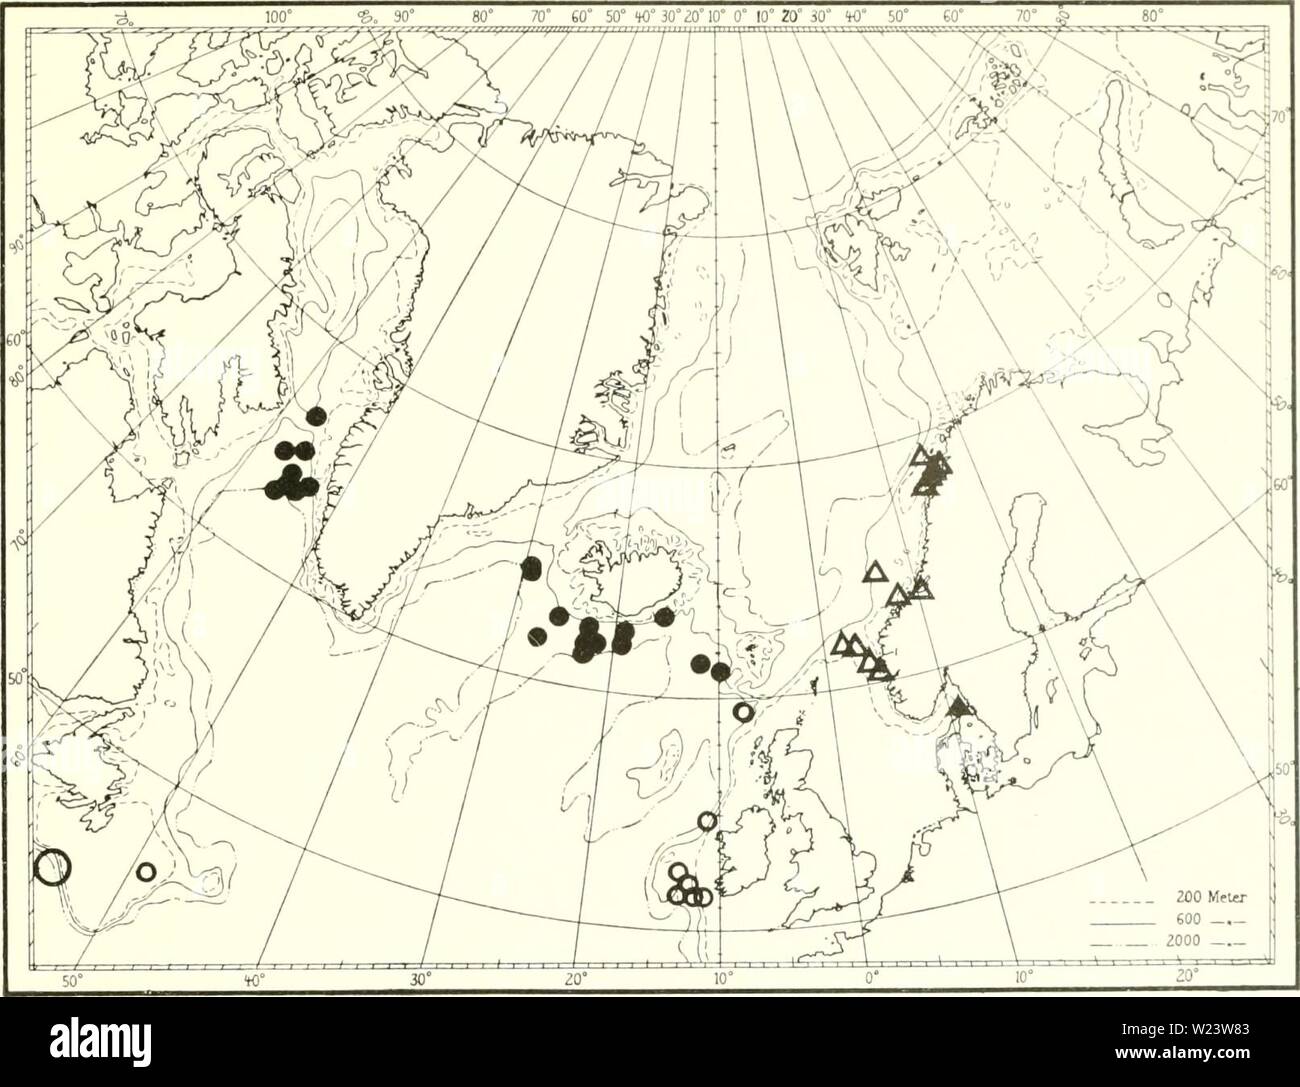 Image d'archive à partir de la page 184 de l'Ingolf danois-Expedition (1899-1953). L'expédition danoise Ingolf-danishingolfex daniuoft5dpt12Année : 1899-1953 Ot'TOC'ORALLIA Fig. 53. Â ¢'Actnu irhusciihi (UC (.lolinsnn). Un Isidi'lhi ]()jok&gt;ixU M. ISC. 02Â°4O' N 22°17' O. 1109)11, 39('. 'Innolf St. (i9. reg N. 27'00' O. 913m, 6Â°1 C. - Si. 62Â°58' N 25°24' O. 1192 m, 4Â°8C. Â - S4. 64Â°45' N. 29Â°0()' O. 1070 m, 4Â°4C. Â - 90. 6r08' N. 9Â°4B' O. 847 m, -irhapl «' SRAS 79 St.. 64Â°05' N. 55Â°20' O. 1100 m, '-Tialfi» St. 337. 64Â°40' N. 56Â°37' O. 750 m, â - 402. 63Â°54' N. 53Â°15' O. 98,S, M Banque D'Images